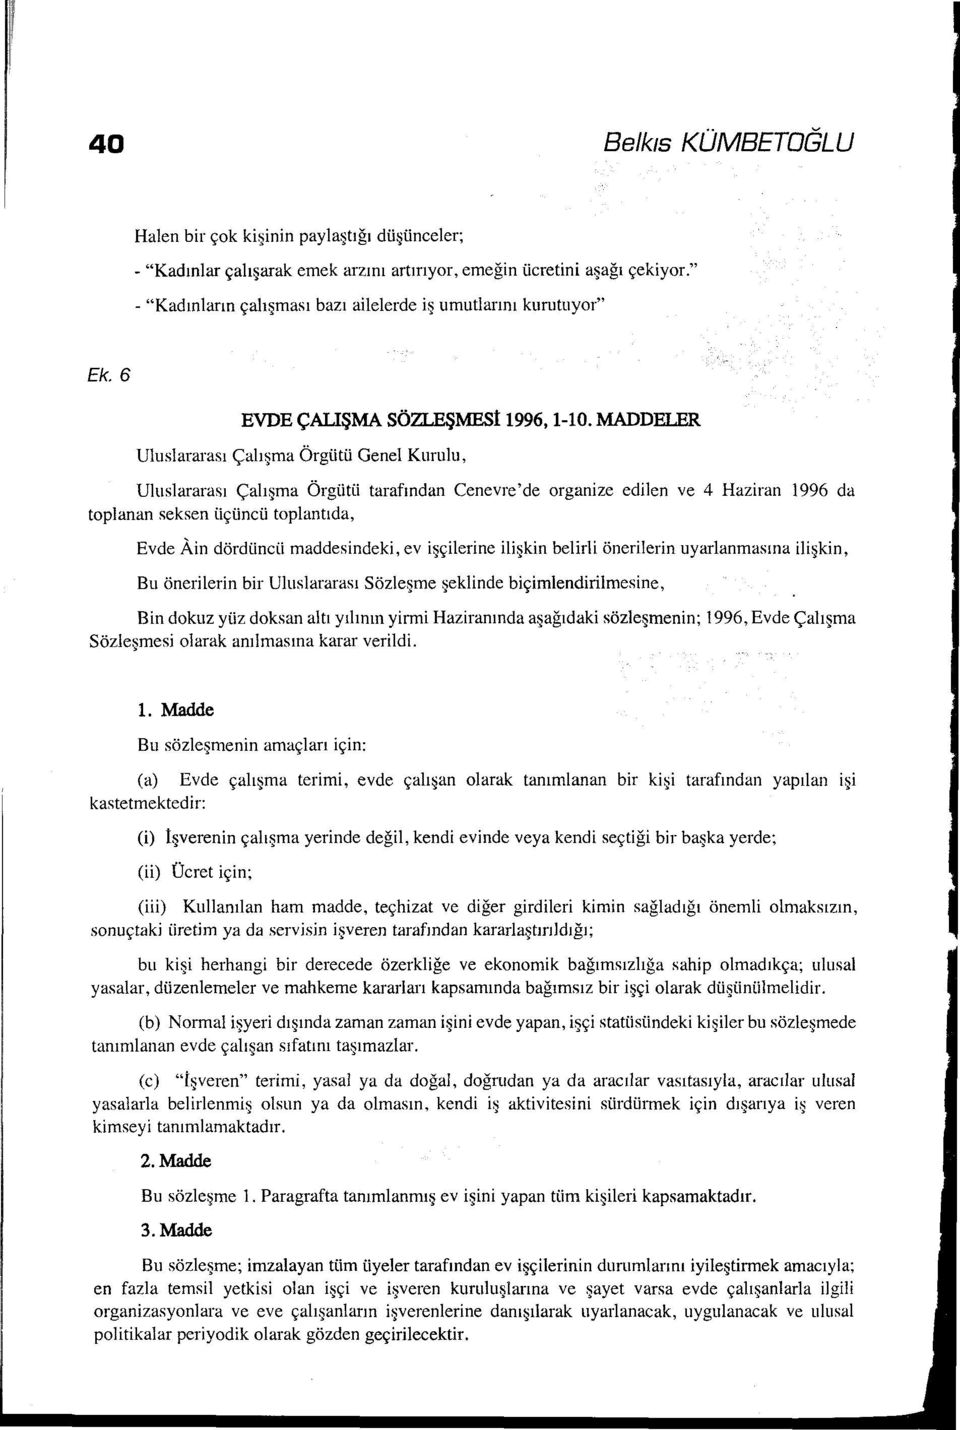 MADDELER Uluslararası Çalışma Örgütü Genel Kurulu, Uluslararası Çalışma Örgütü tarafından Cenevre'de organize edilen ve 4 Haziran 1996 da toplanan seksen üçüncü toplantıda, Evde Ain dördüncü